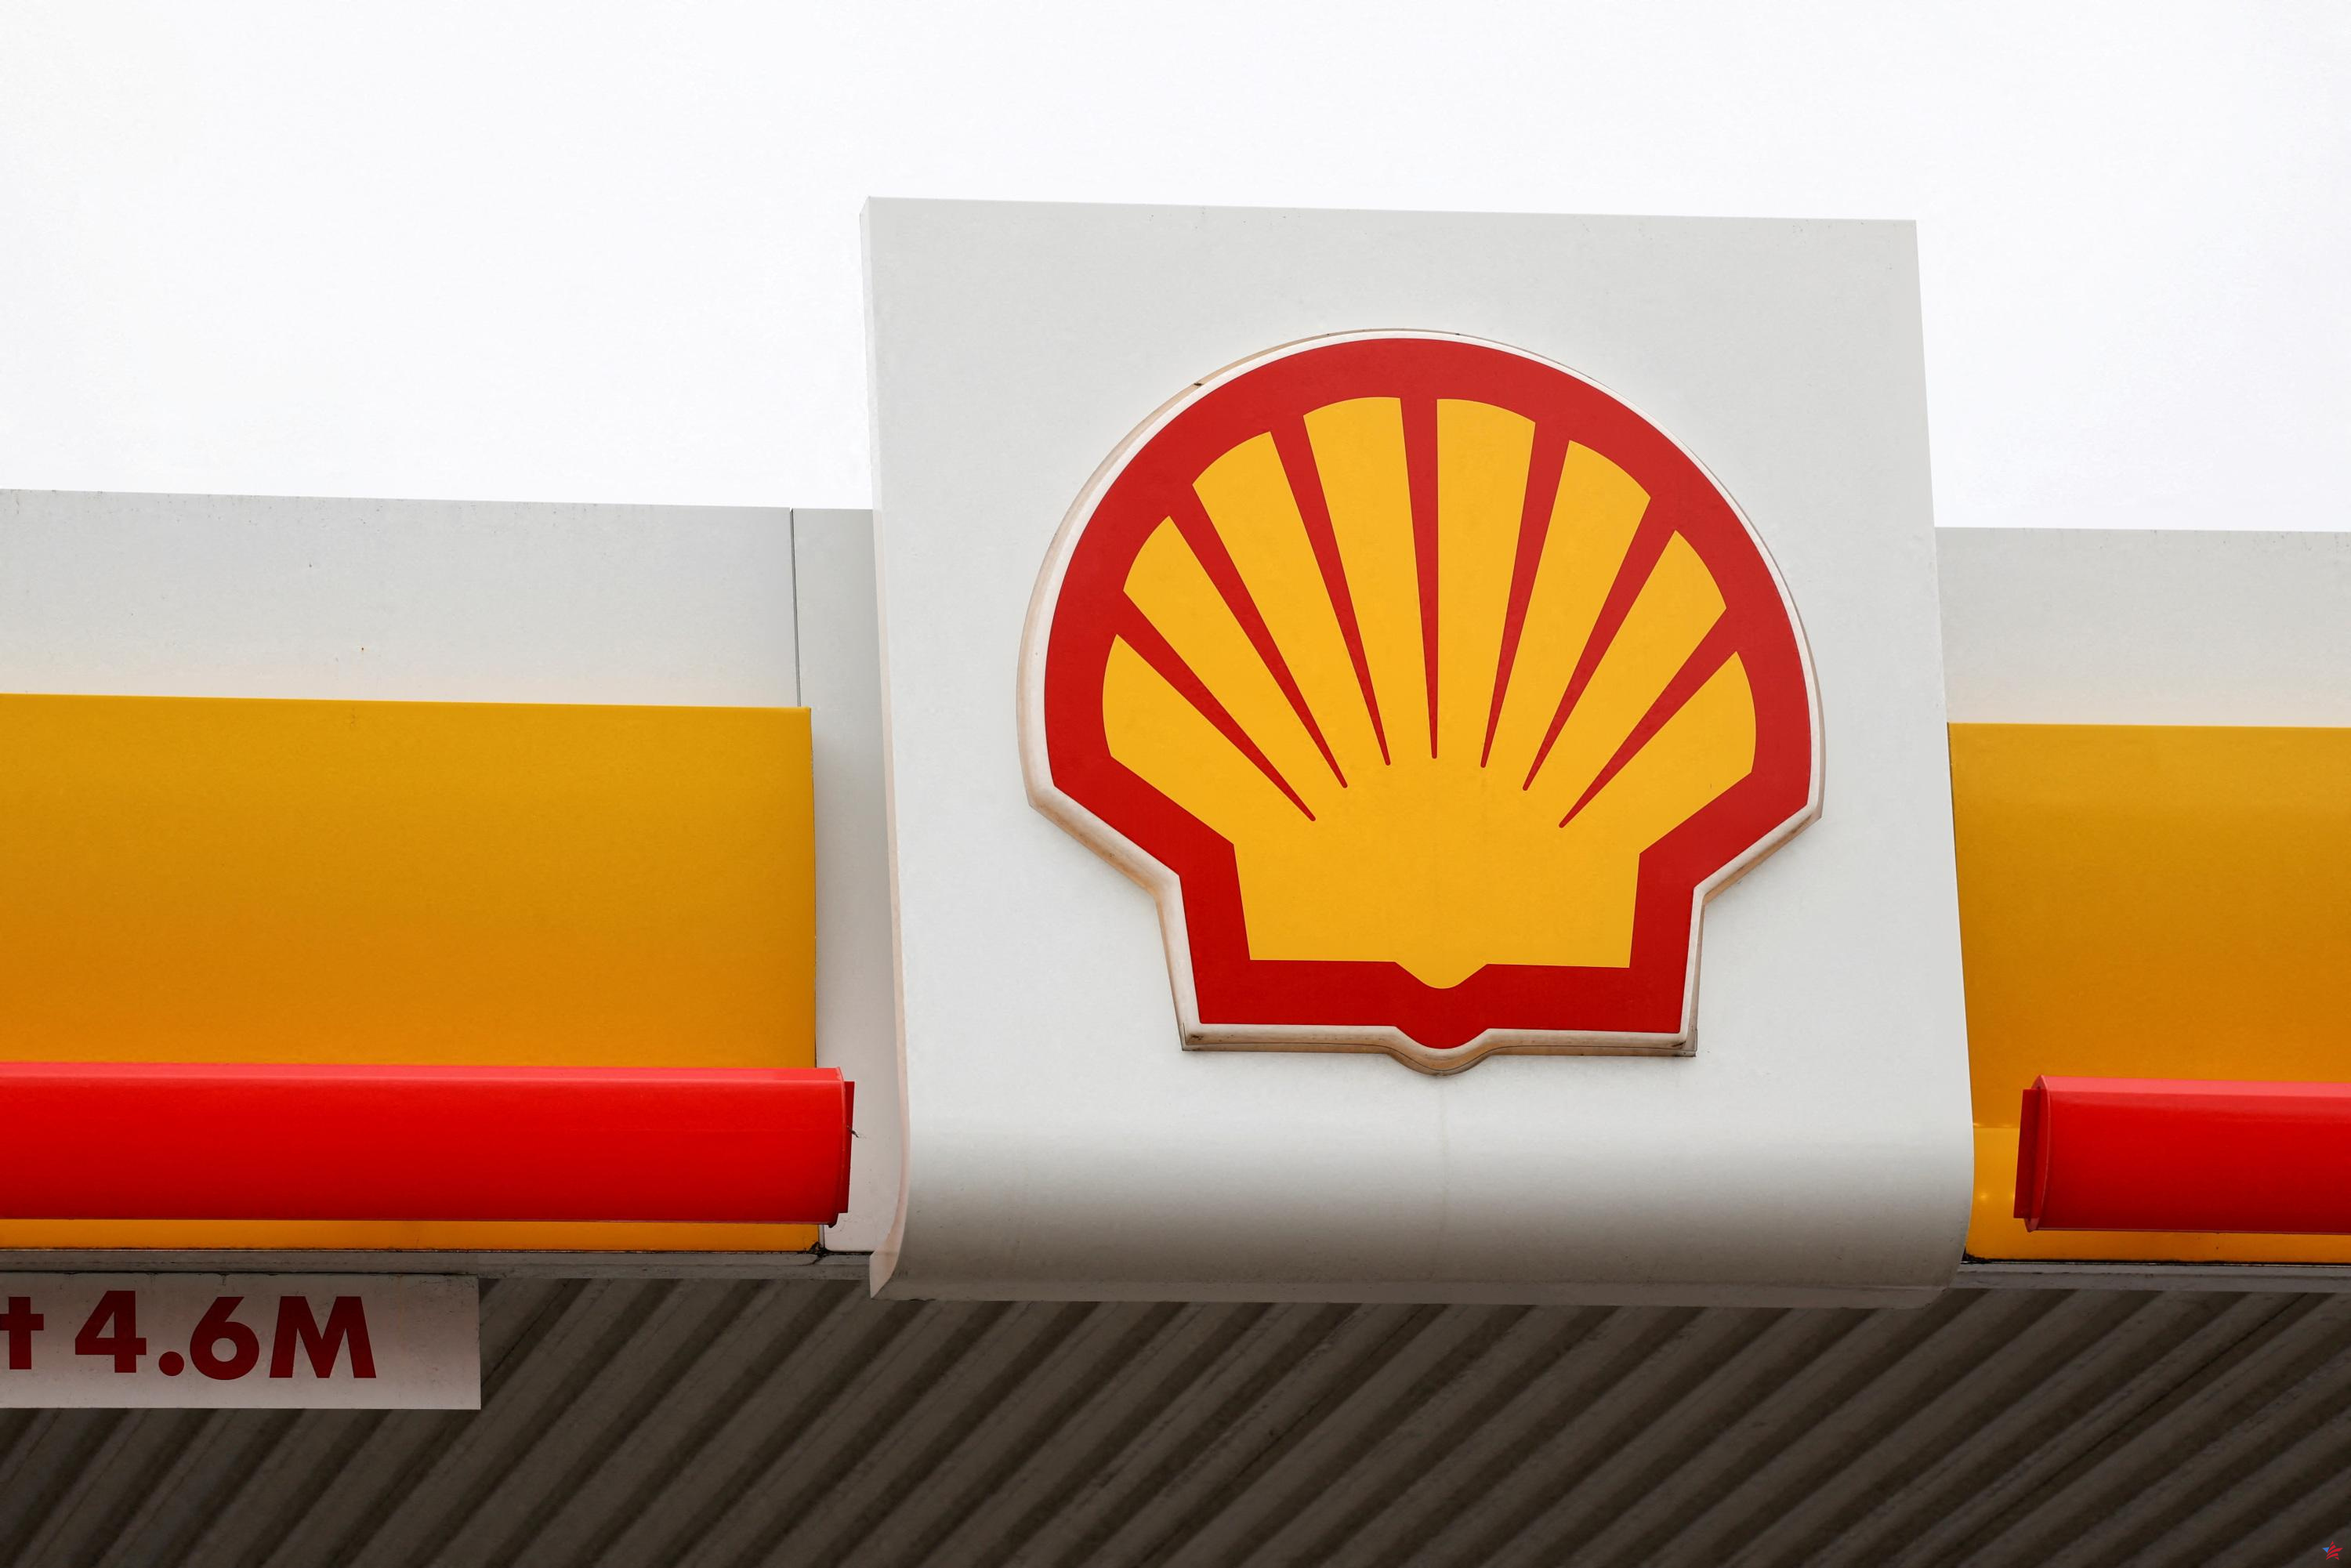 Acusada de inacción climática, Shell vuelve a comparecer ante los tribunales